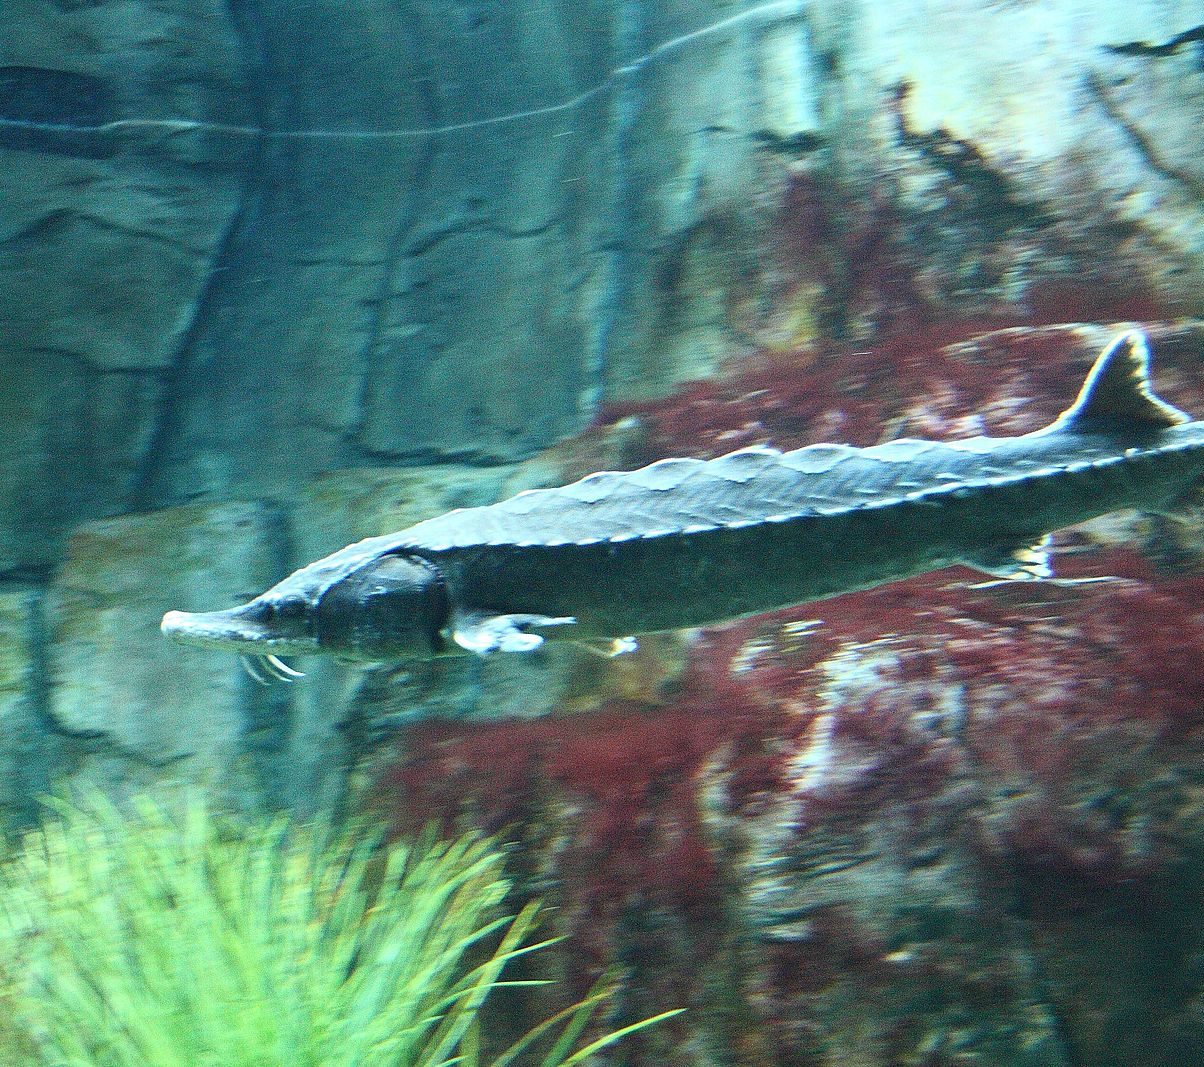 Atlantic sturgeon at the Aquarium du Québec.